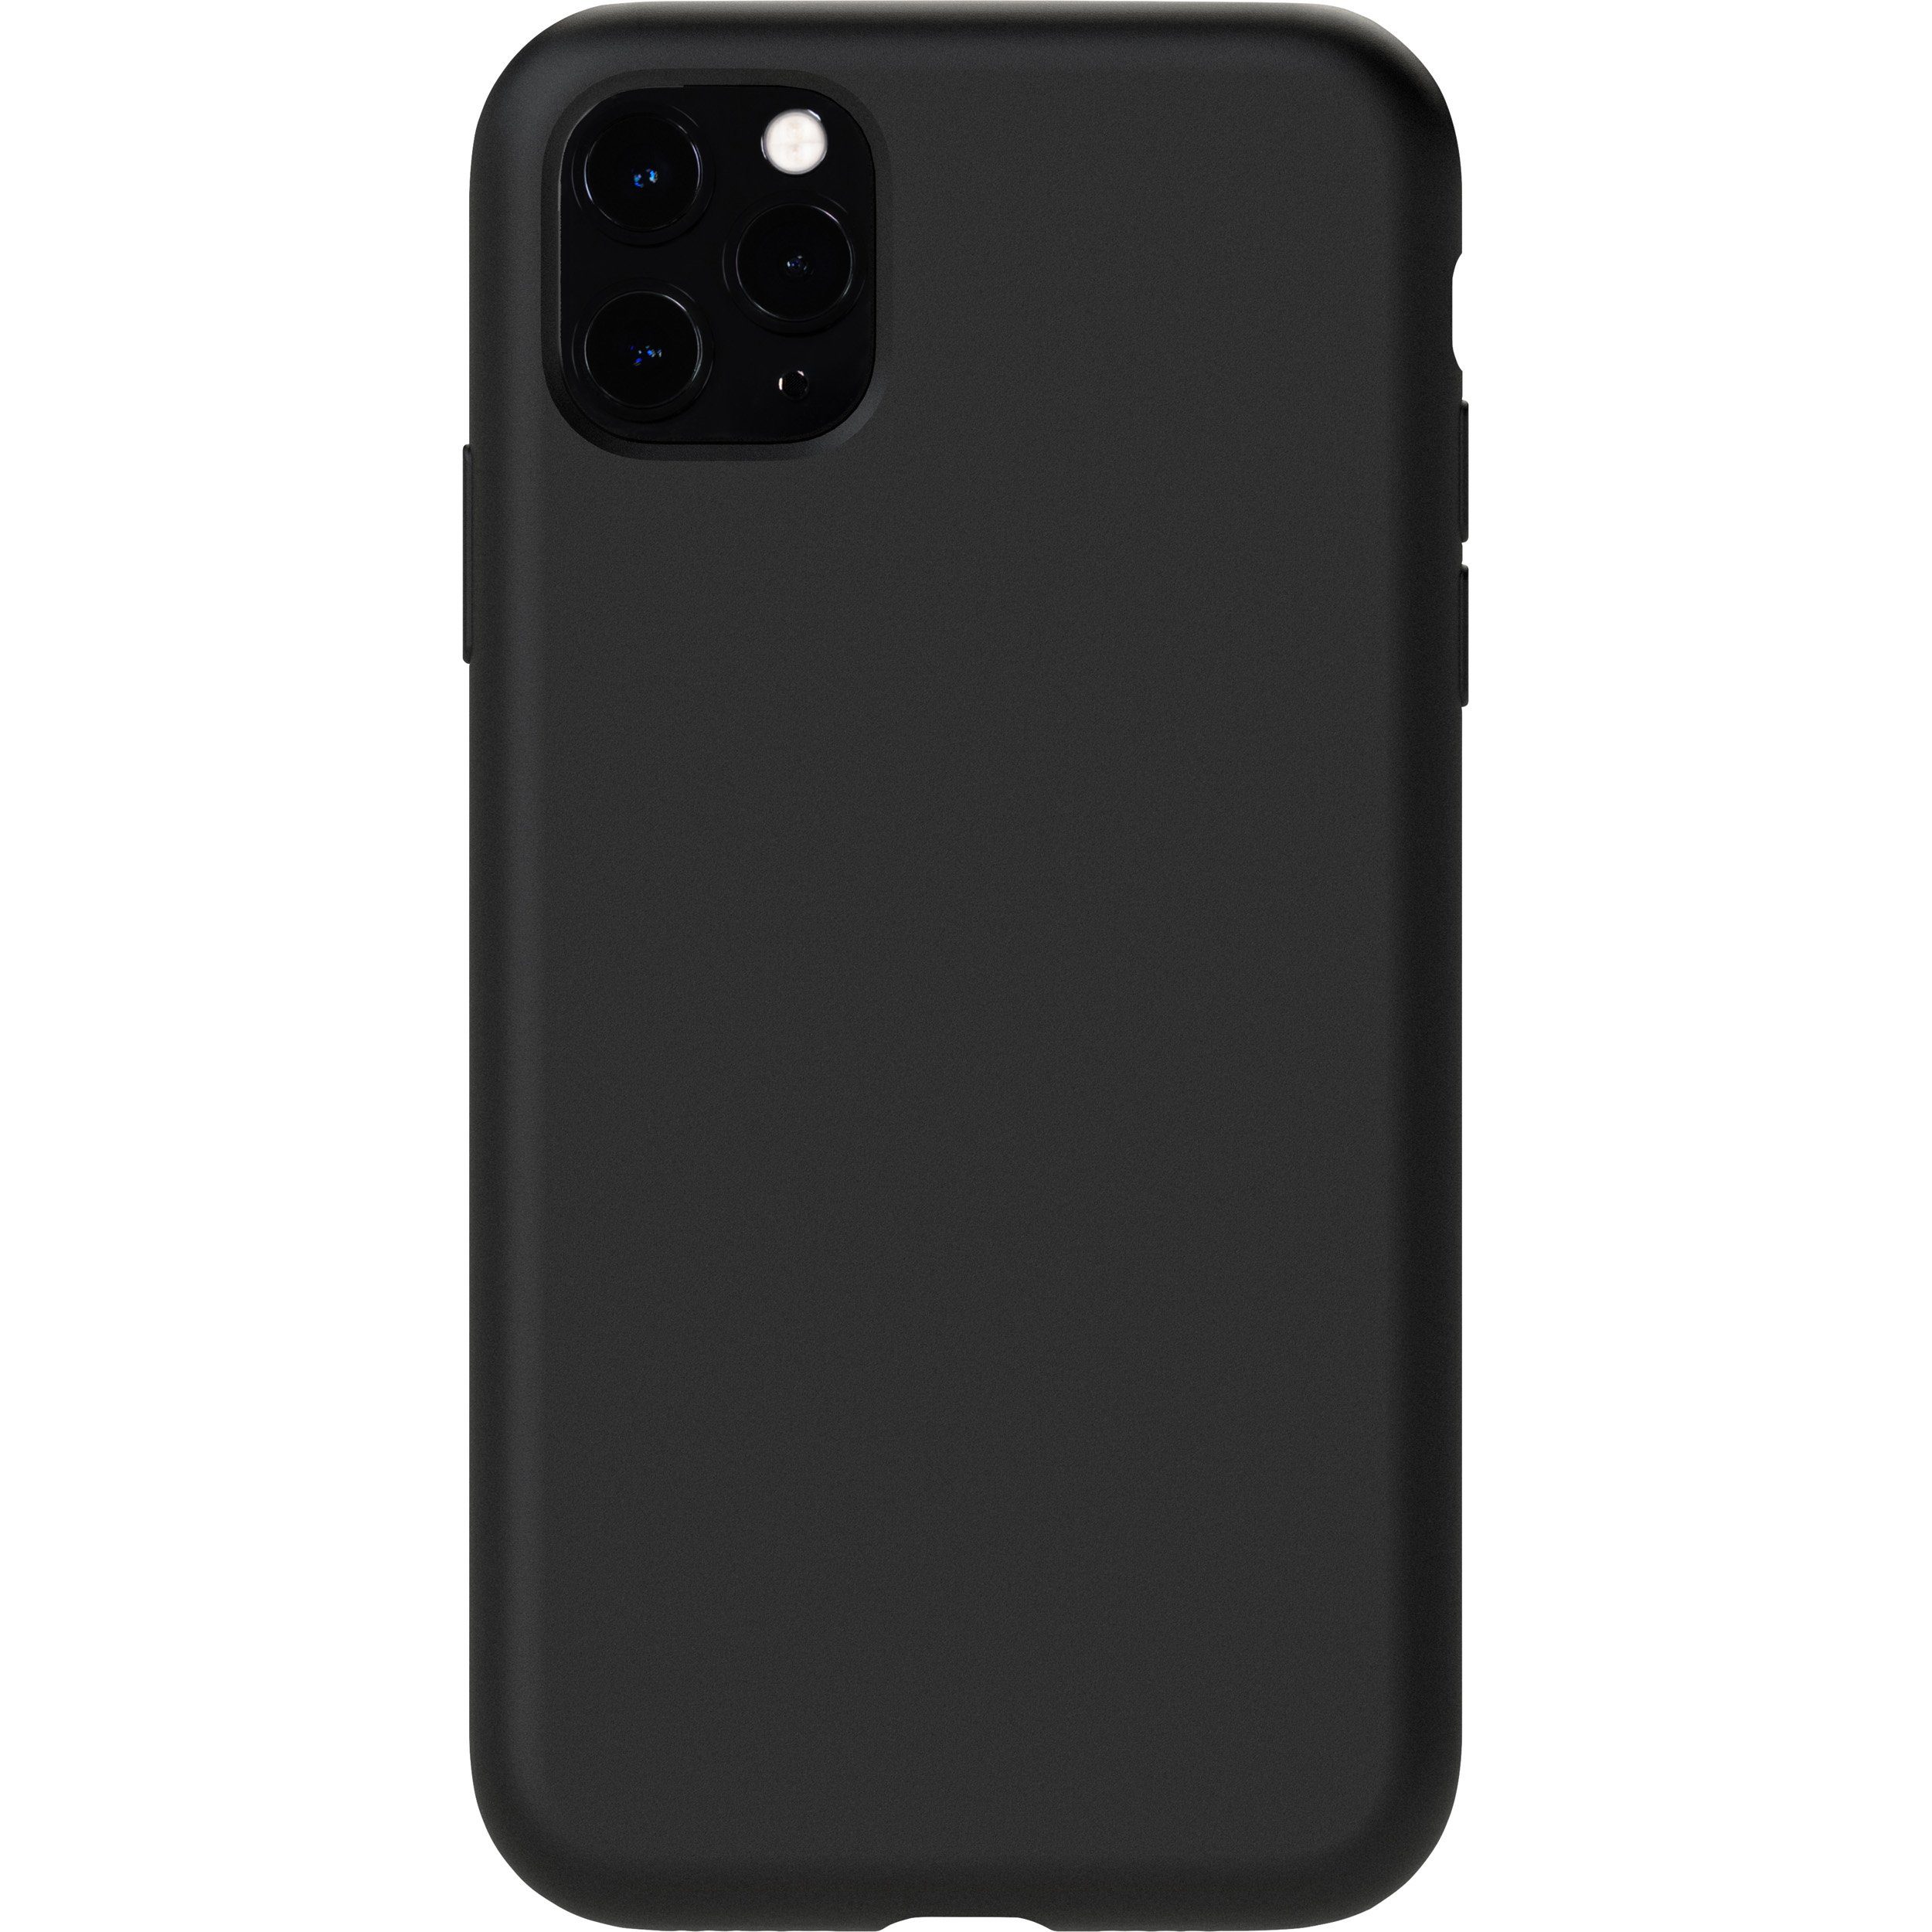 KMP Creative Lifesytle Product Handyhülle Silikon Schutzhülle für iPhone 11 Pro Black 5,8 Zoll